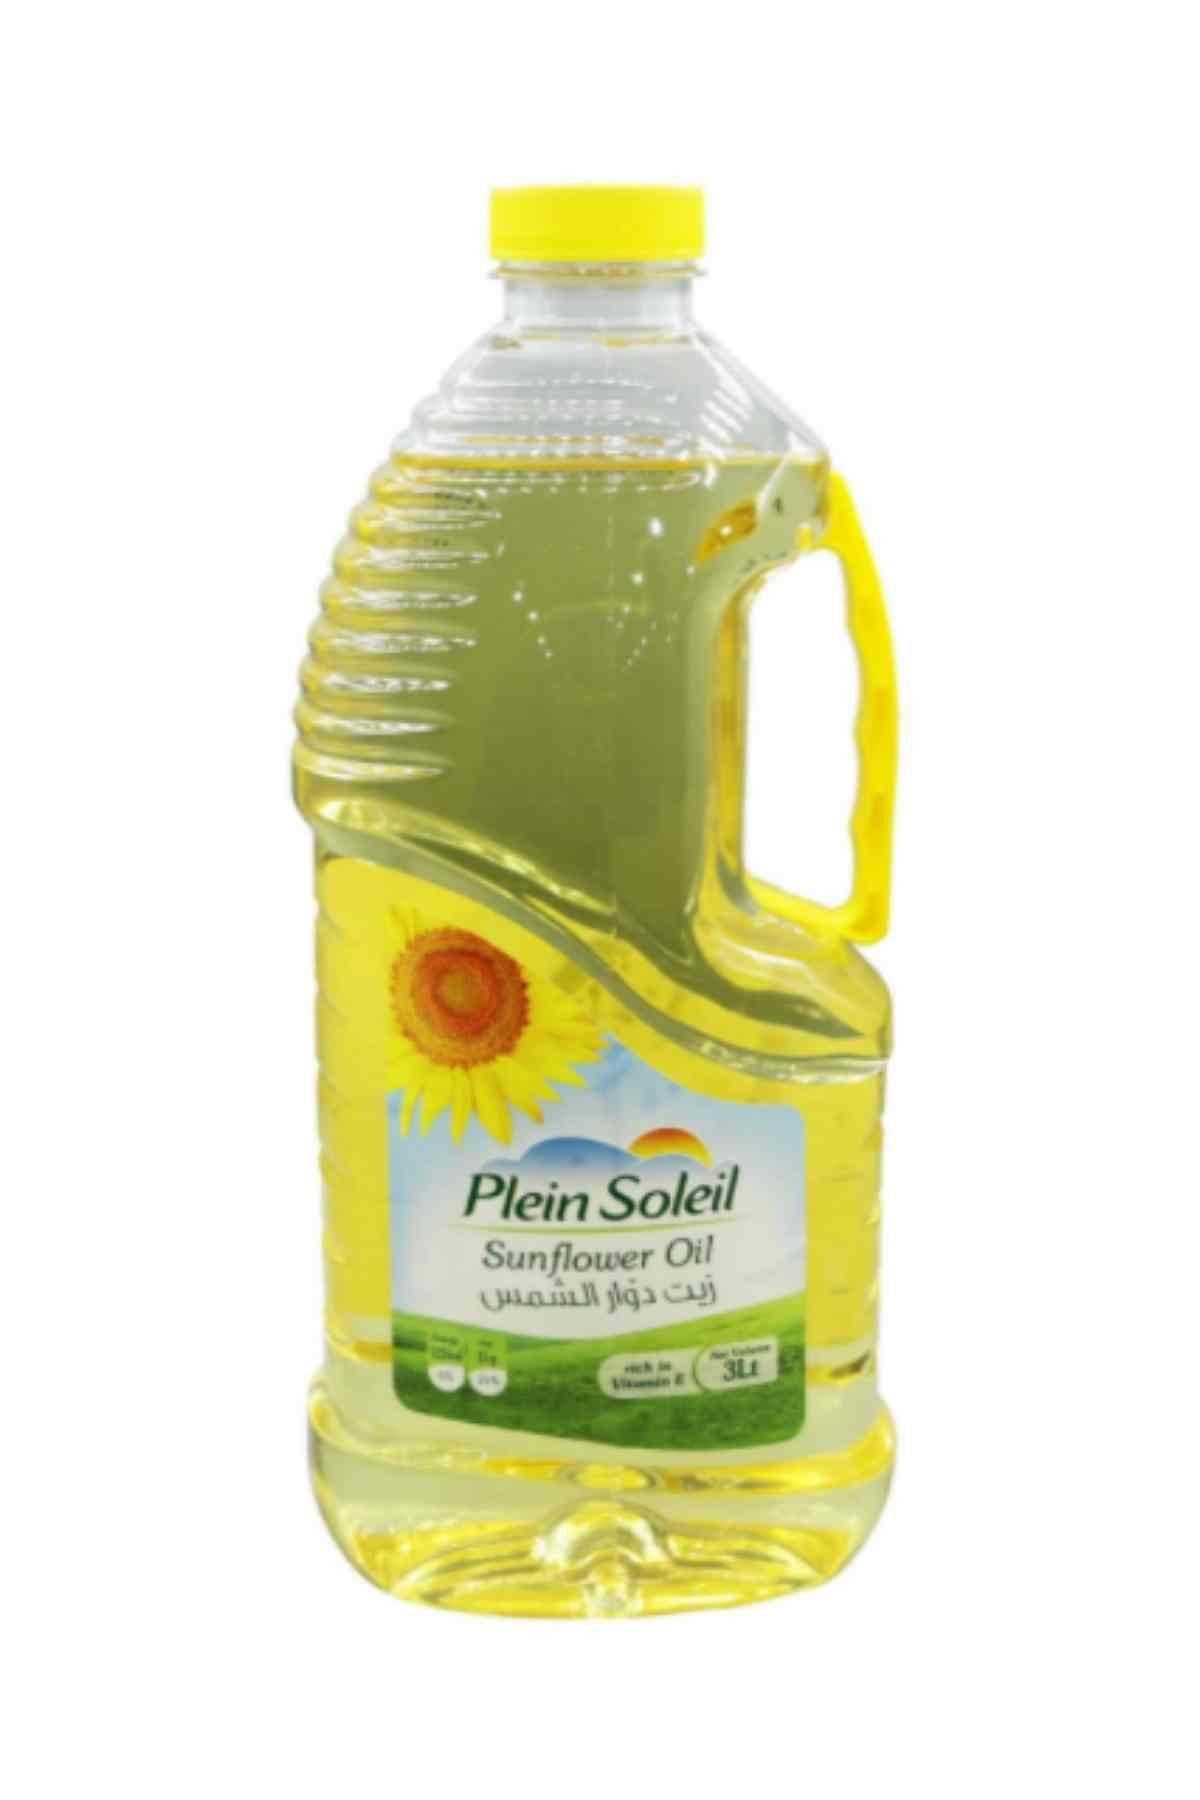 Plein Soleil Sunflower Oil 3L